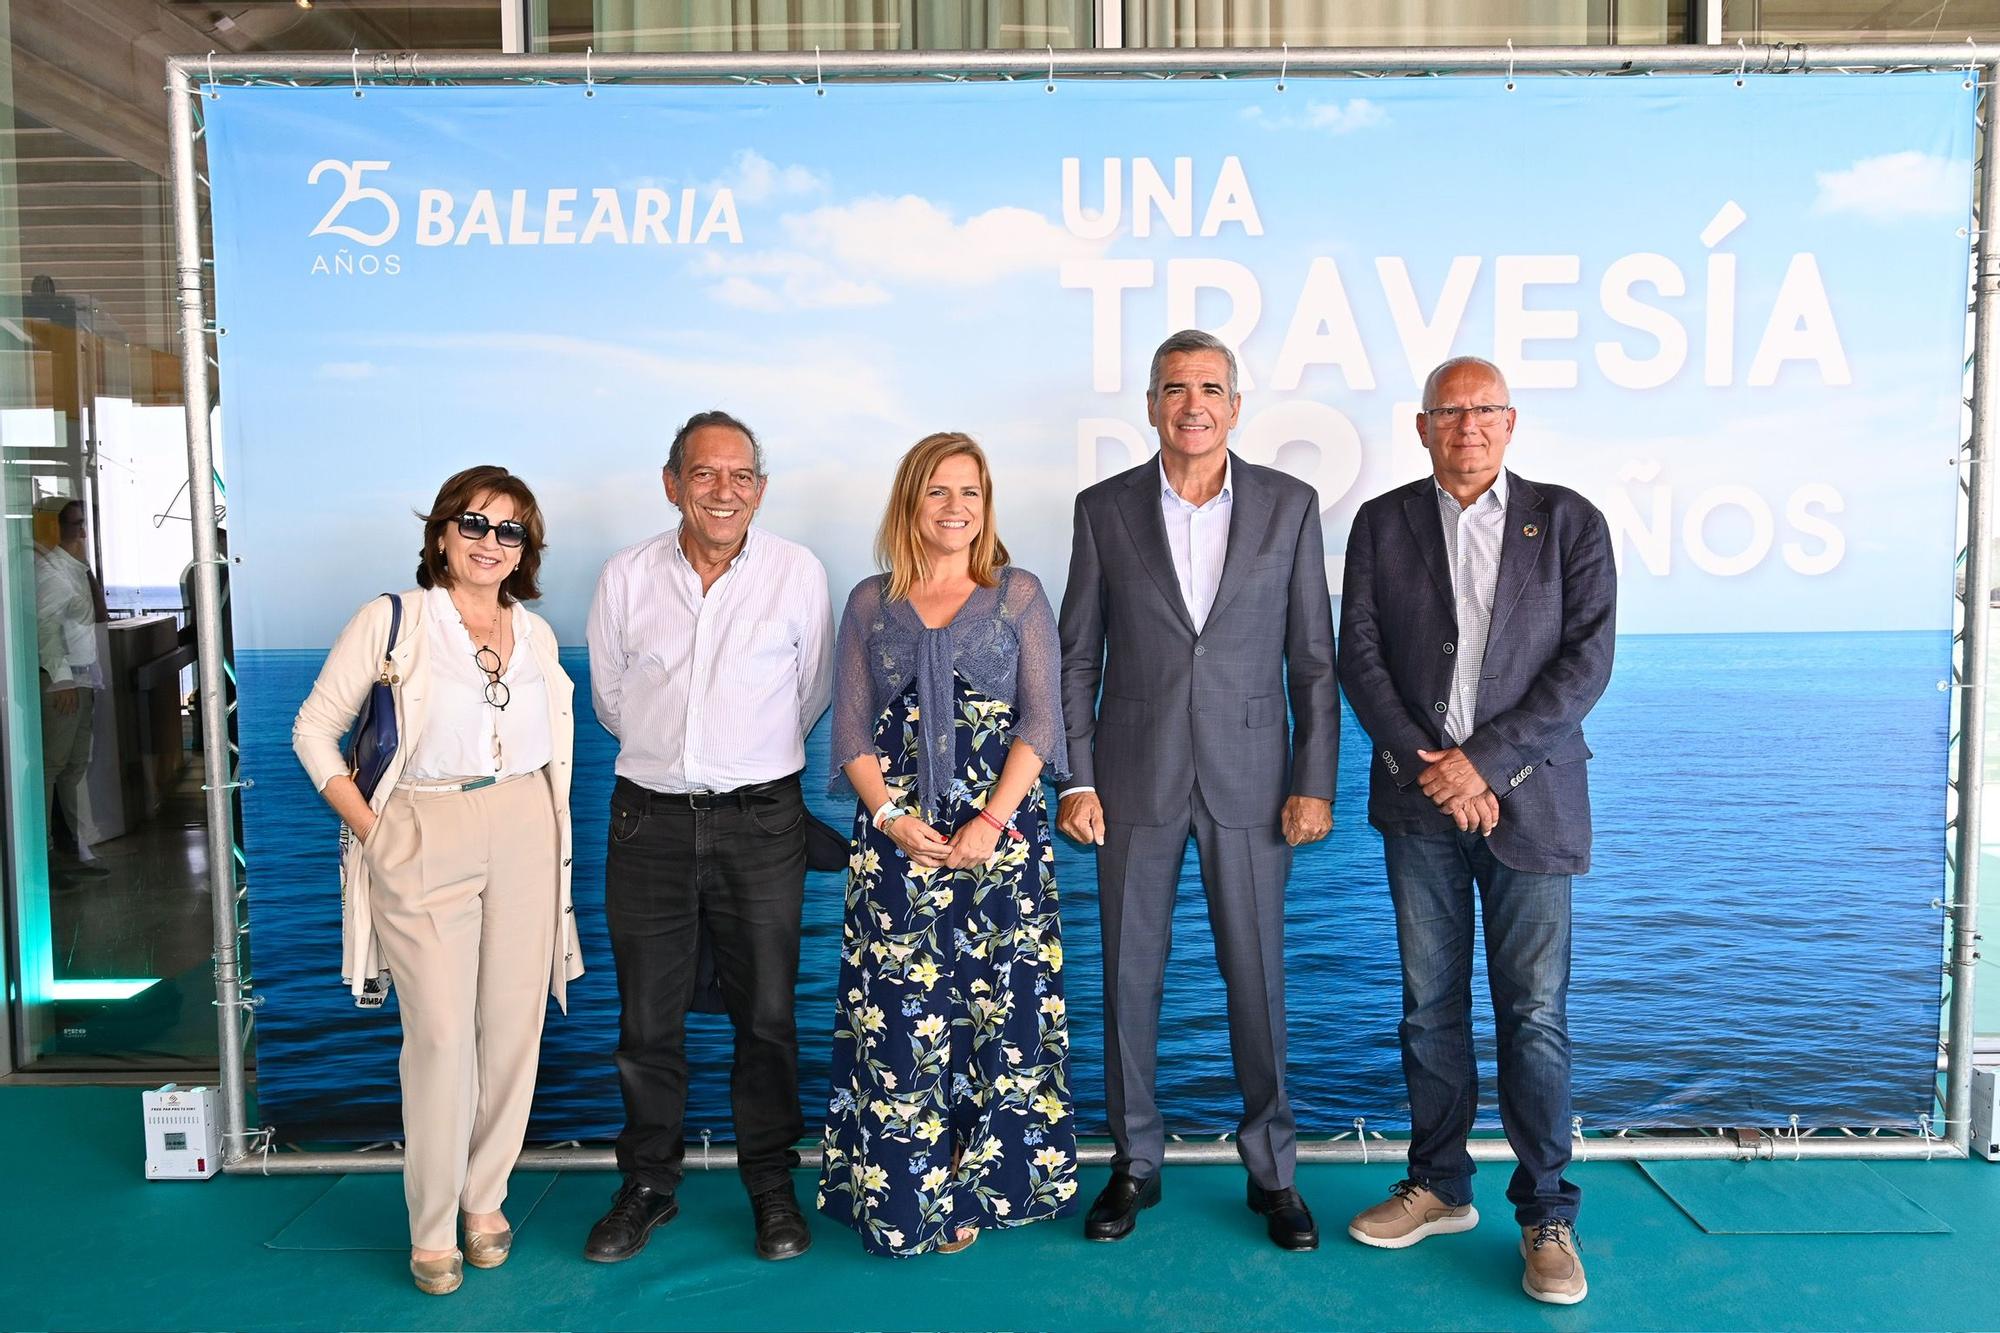 La fiesta popular por los 25 años de Baleària, en imágenes